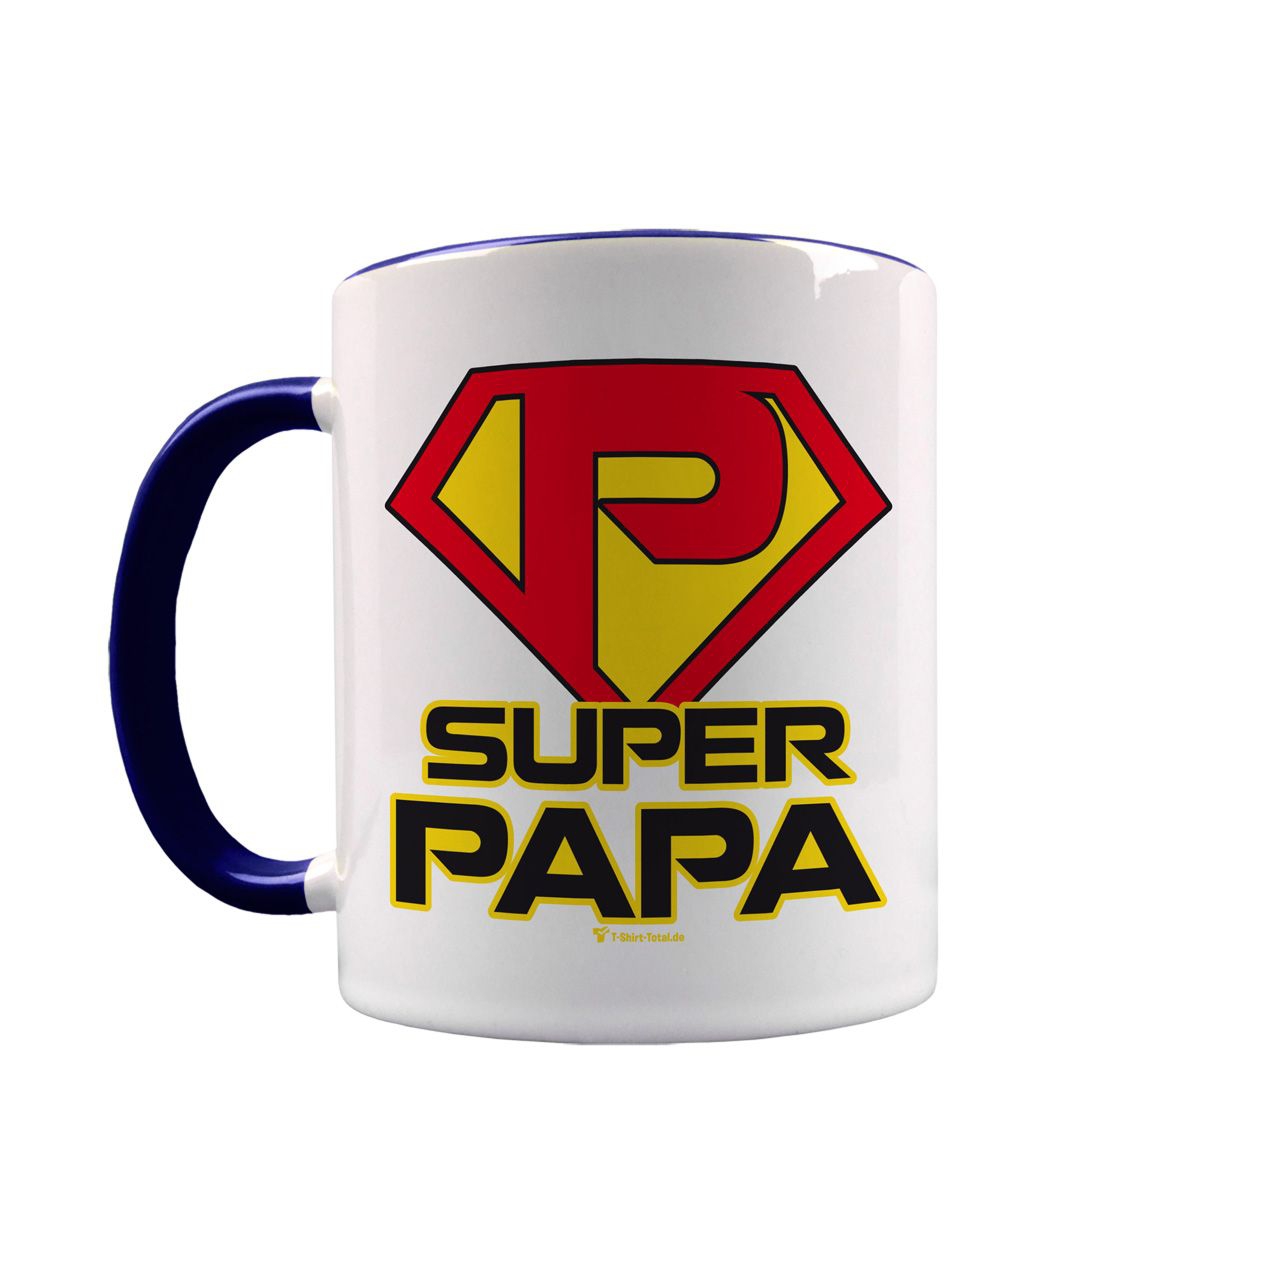 Super Papa Tasse navy / weiß